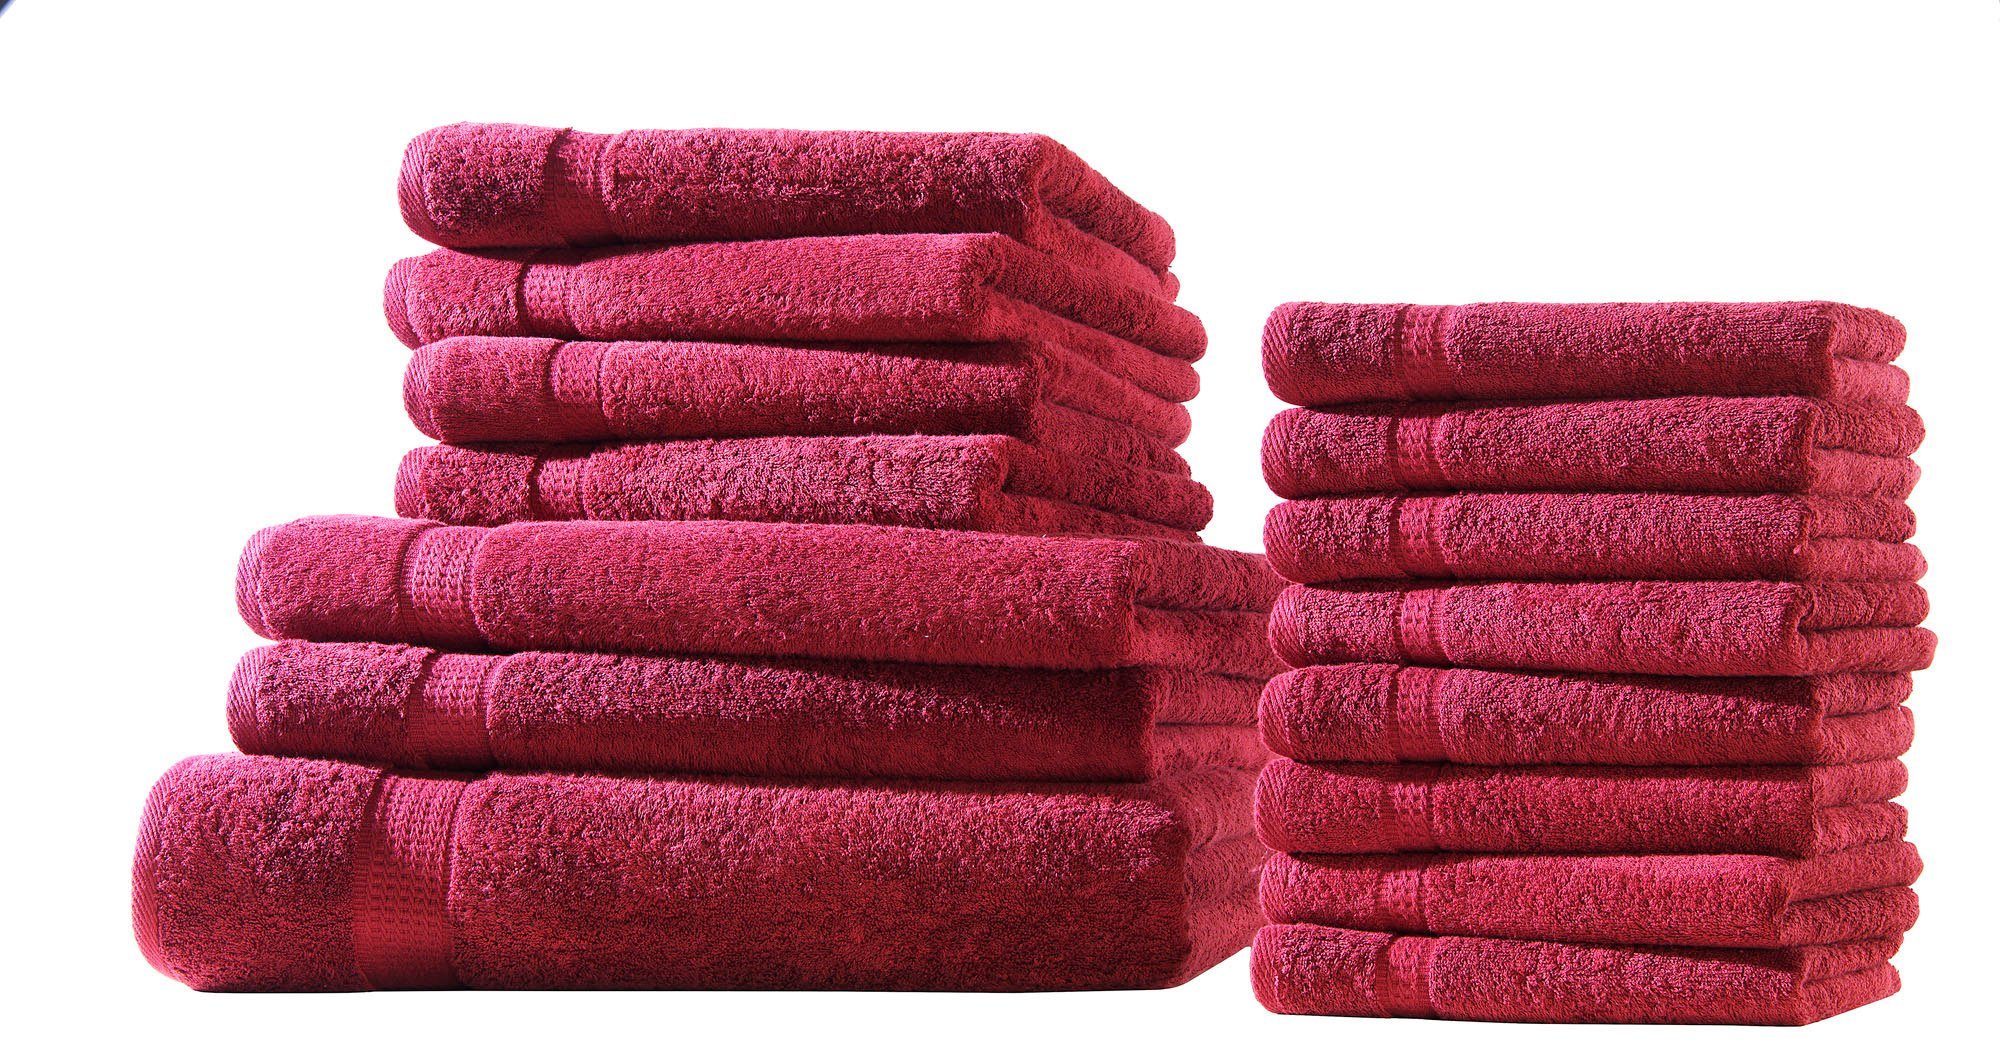 Hometex Premium Textiles Handtuch in Premium Qualität 500 g/m², Feinster Frottier-Stoff 100% Baumwolle, 1x Badetuch + 2 Duschtuch + 4 Handtuch + 8 gastetuch, Kuschelig weich, saugfähig, Extra schwere, flauschige Hotel-Qualität